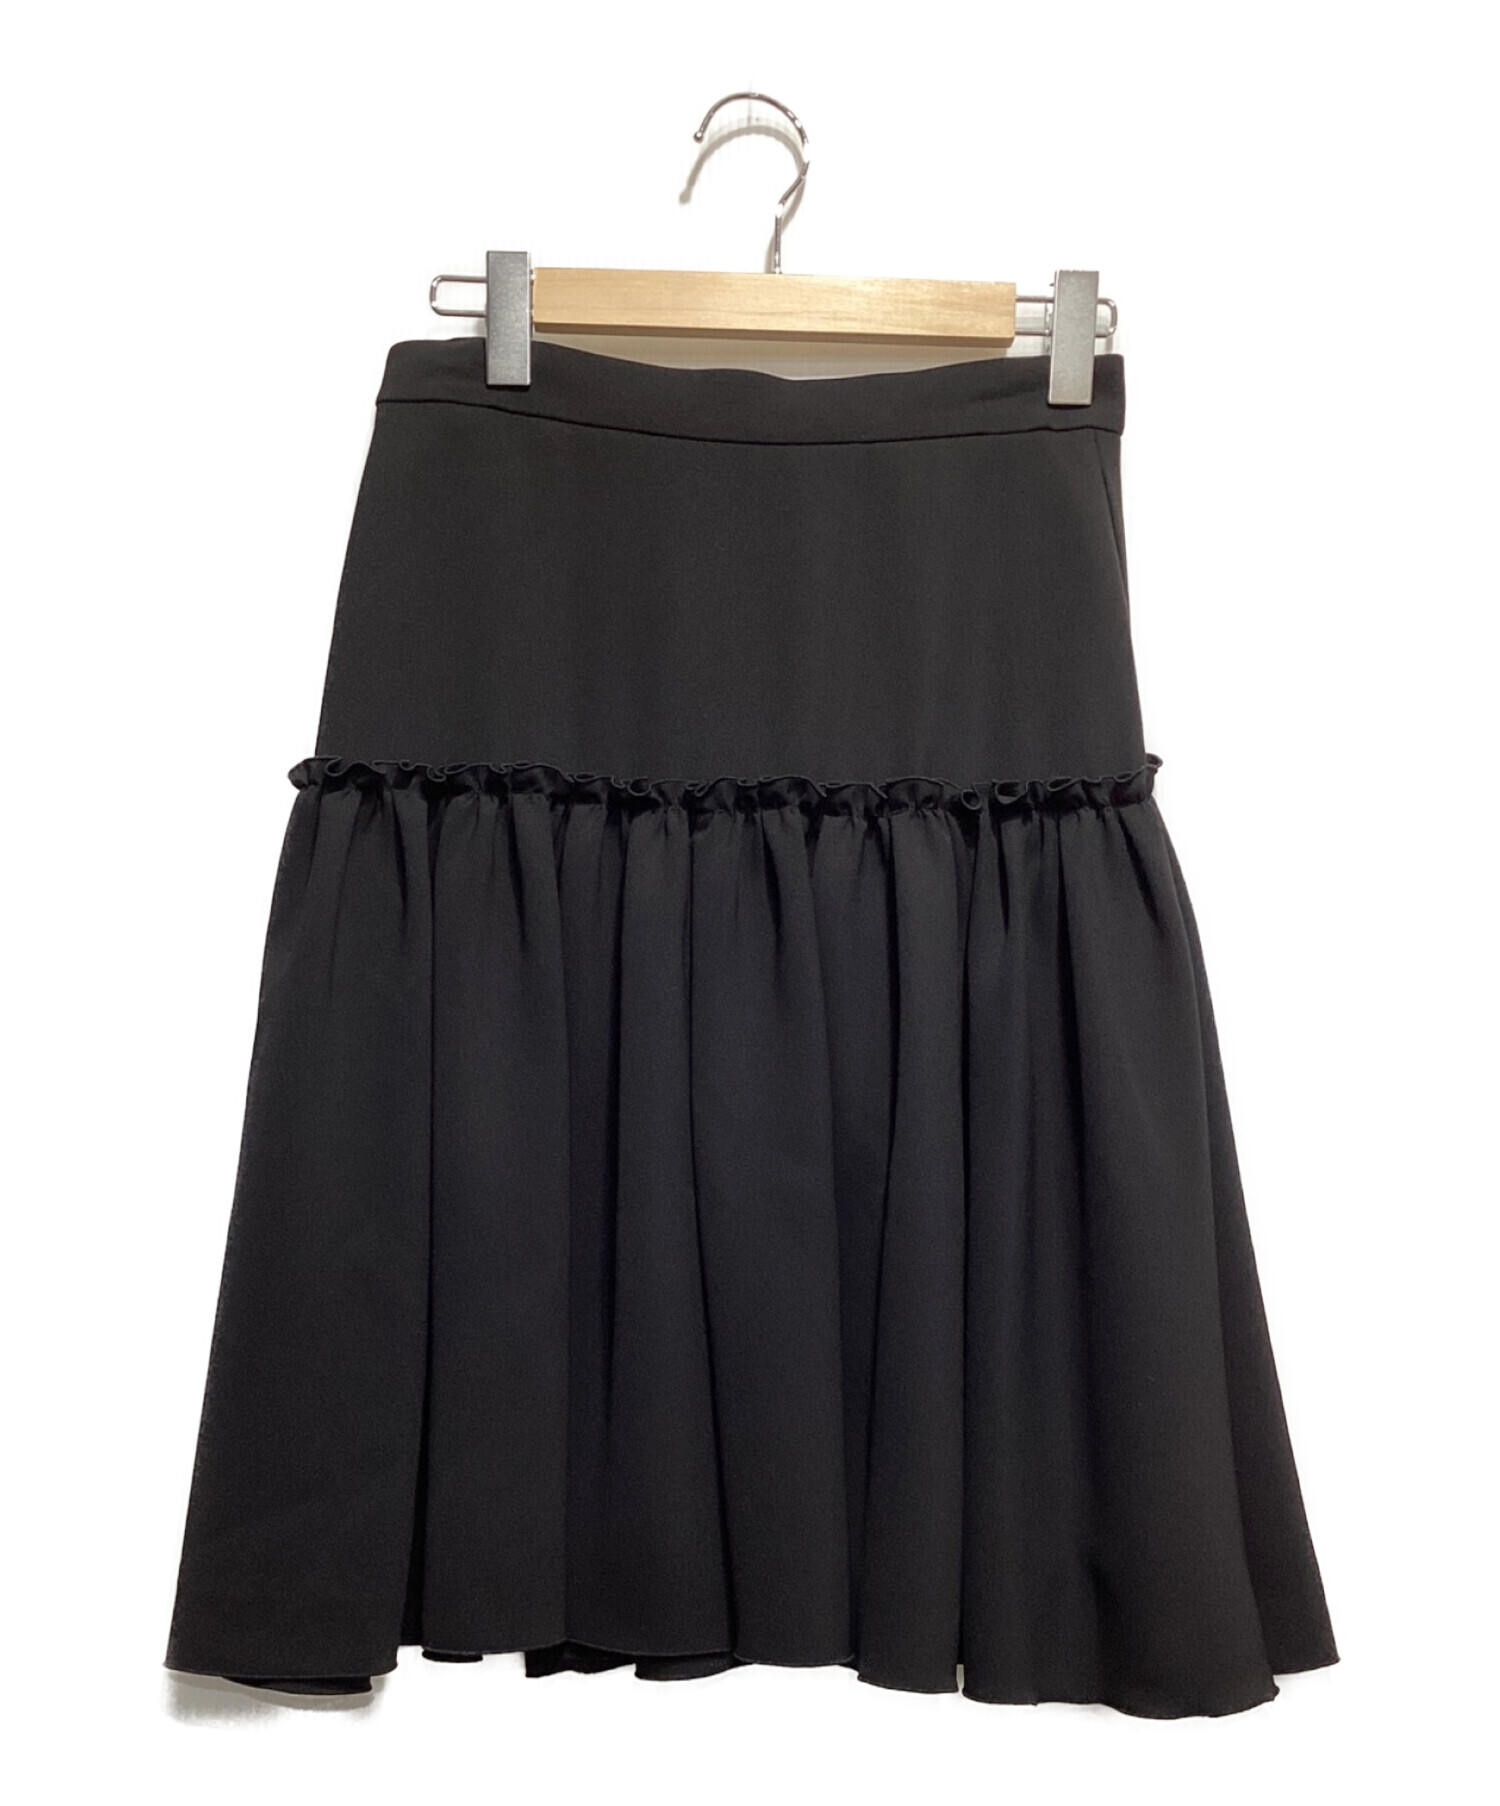 FOXEY NEWYORK (フォクシーニューヨーク) リボンラップスカート ブラック サイズ:40